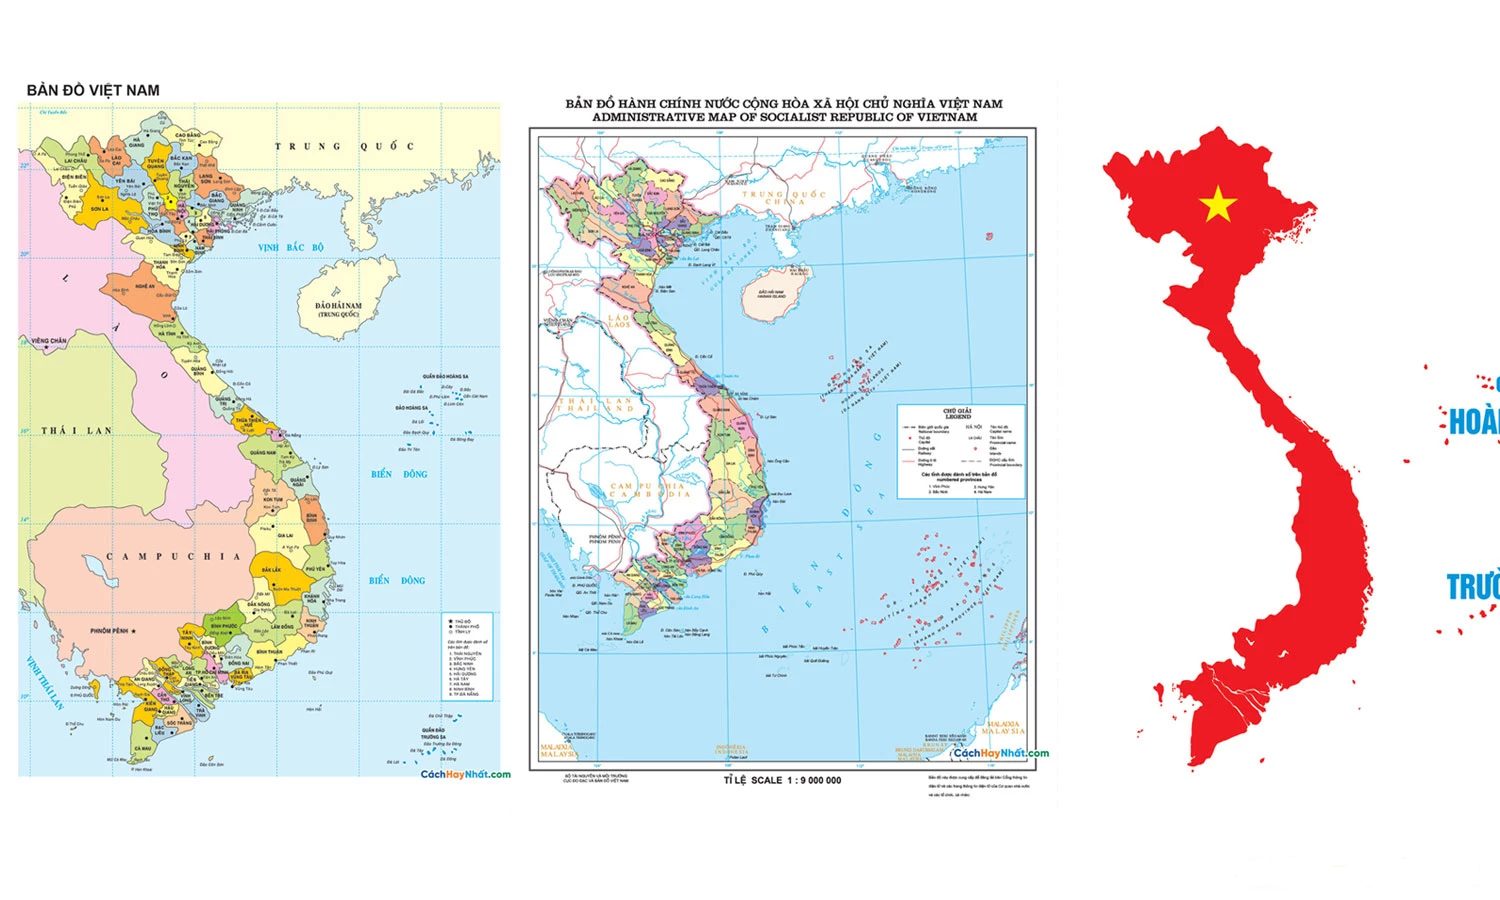 Bản tác giả dạng số bản đồ hành chính Việt Nam: Với sự tiến bộ của công nghệ, ngay cả bản đồ hành chính của Việt Nam cũng đã được chuyển đổi sang định dạng số. Hãy khám phá bản đồ hành chính Việt Nam của tác giả dạng số để tìm hiểu về lịch sử, văn hóa và địa lý của đất nước Việt Nam. Bản đồ hành chính của tác giả dạng số sẽ mang lại cho bạn trải nghiệm tuyệt vời.